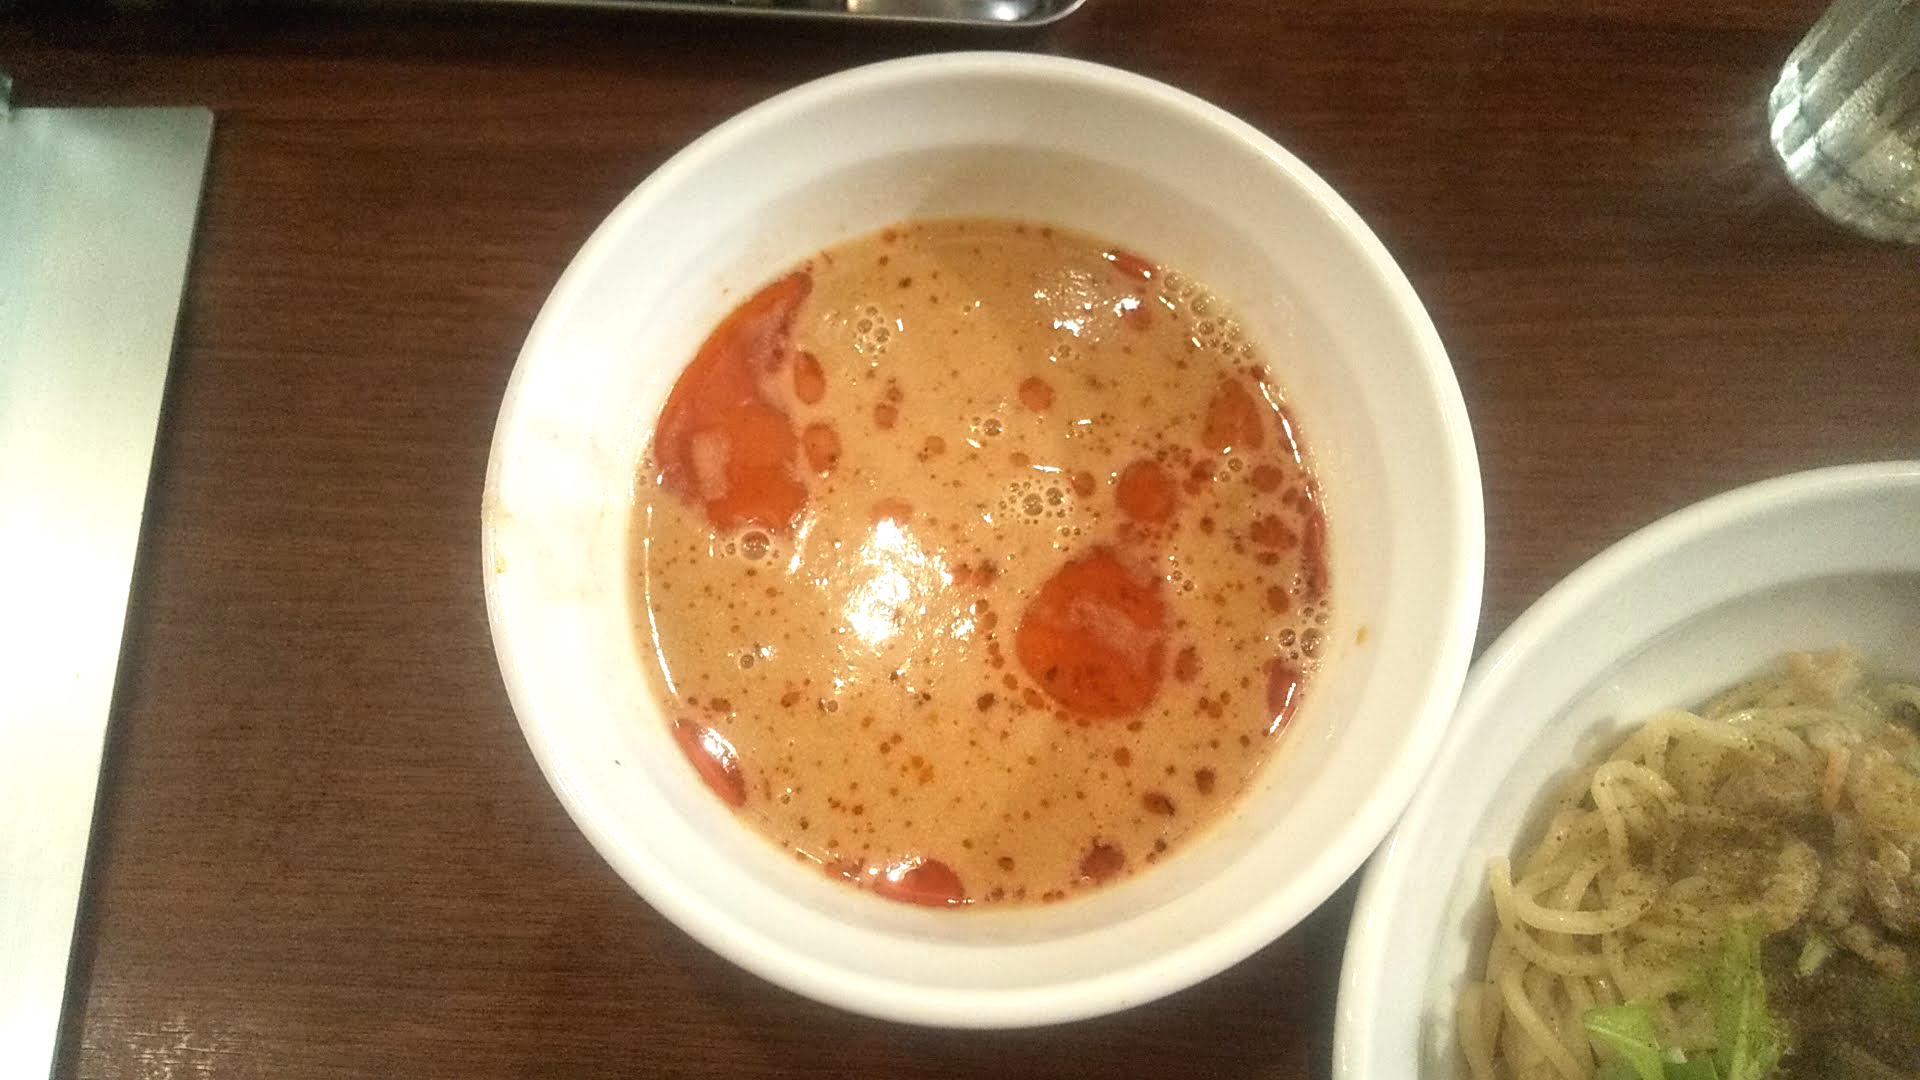 Xingfuの坦々つけ麺のつけ汁の写真